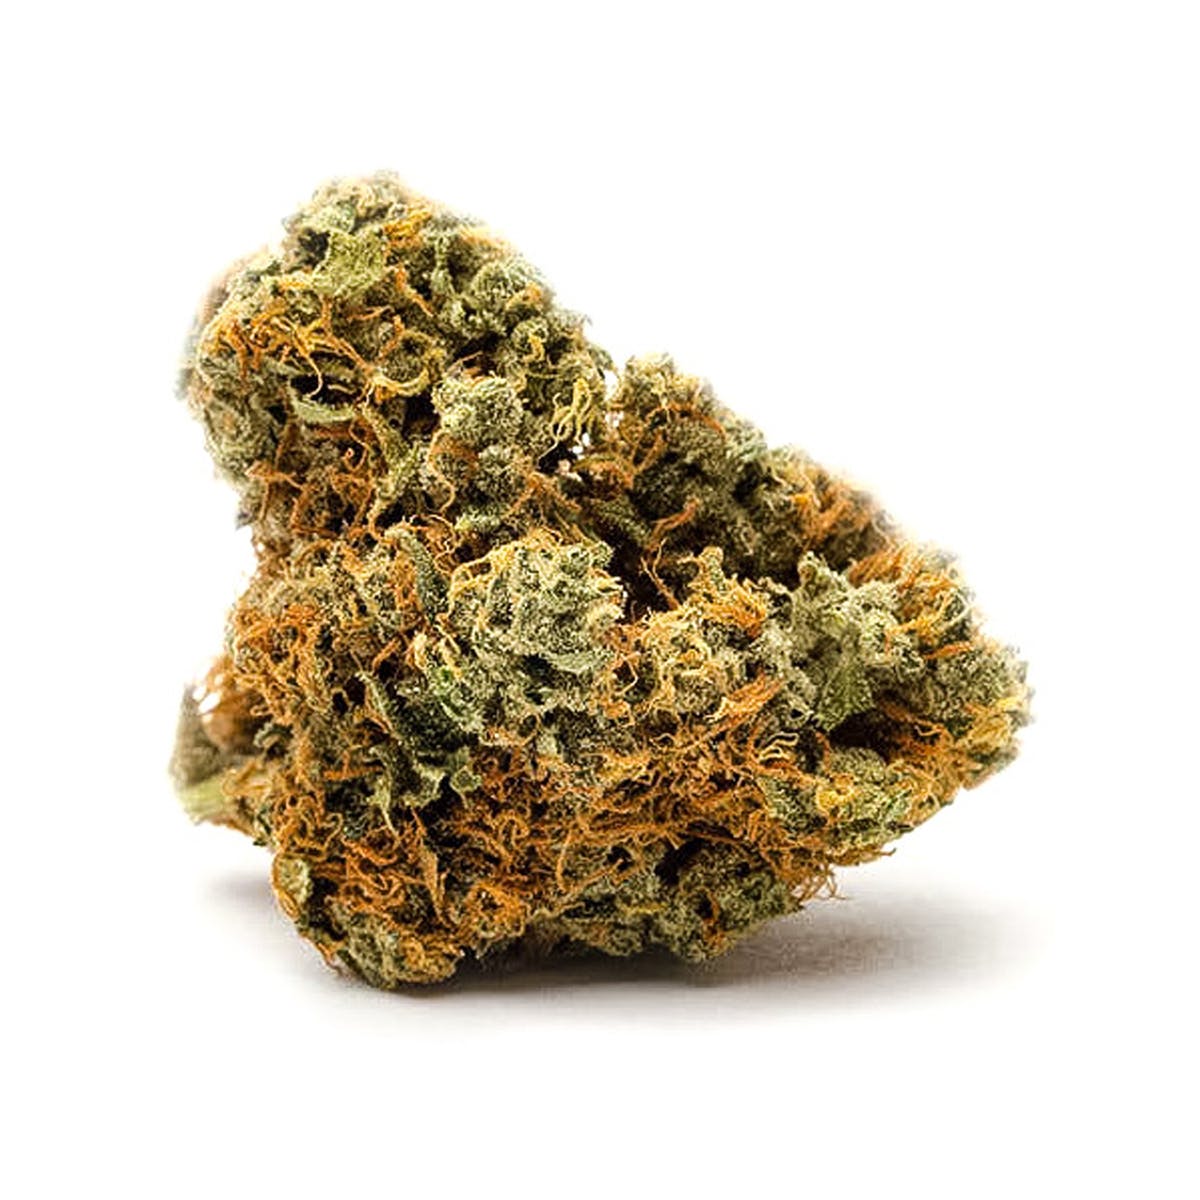 marijuana-dispensaries-southern-vermont-wellness-in-brattleboro-sour-kush